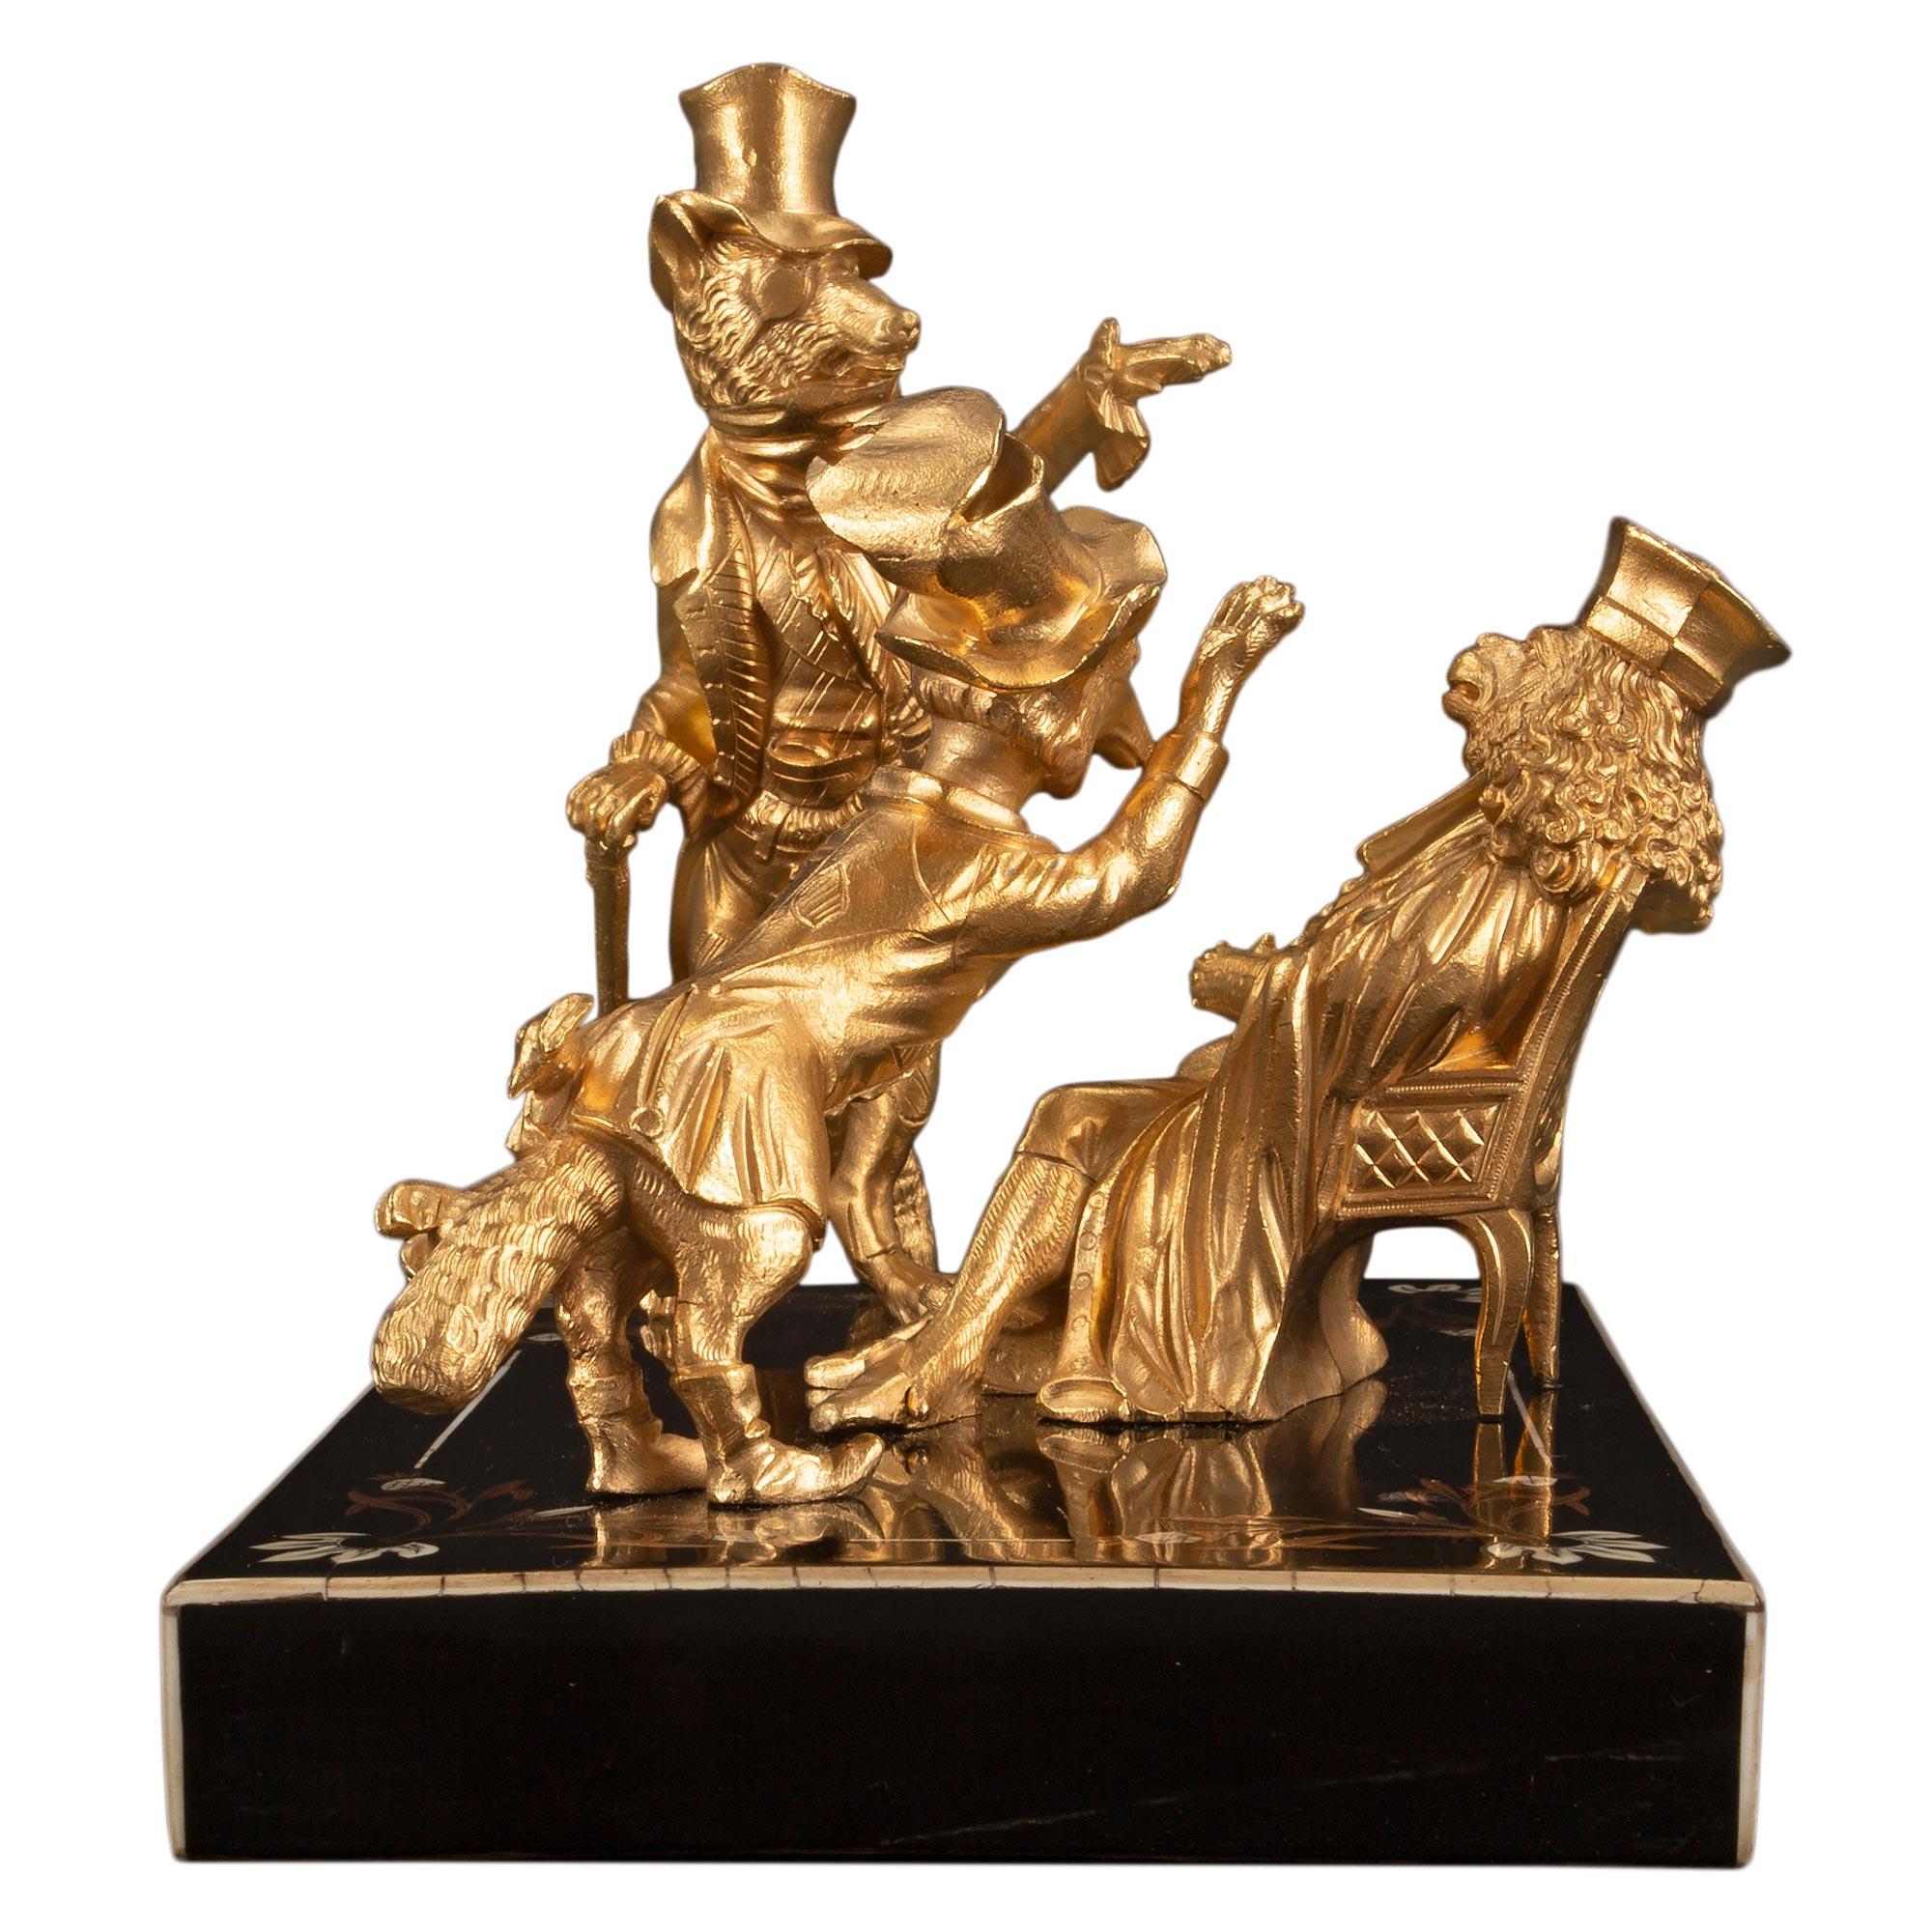 French 19th Century Louis XVI Style Napoleon III Period Statue/Desk Accessory For Sale 1